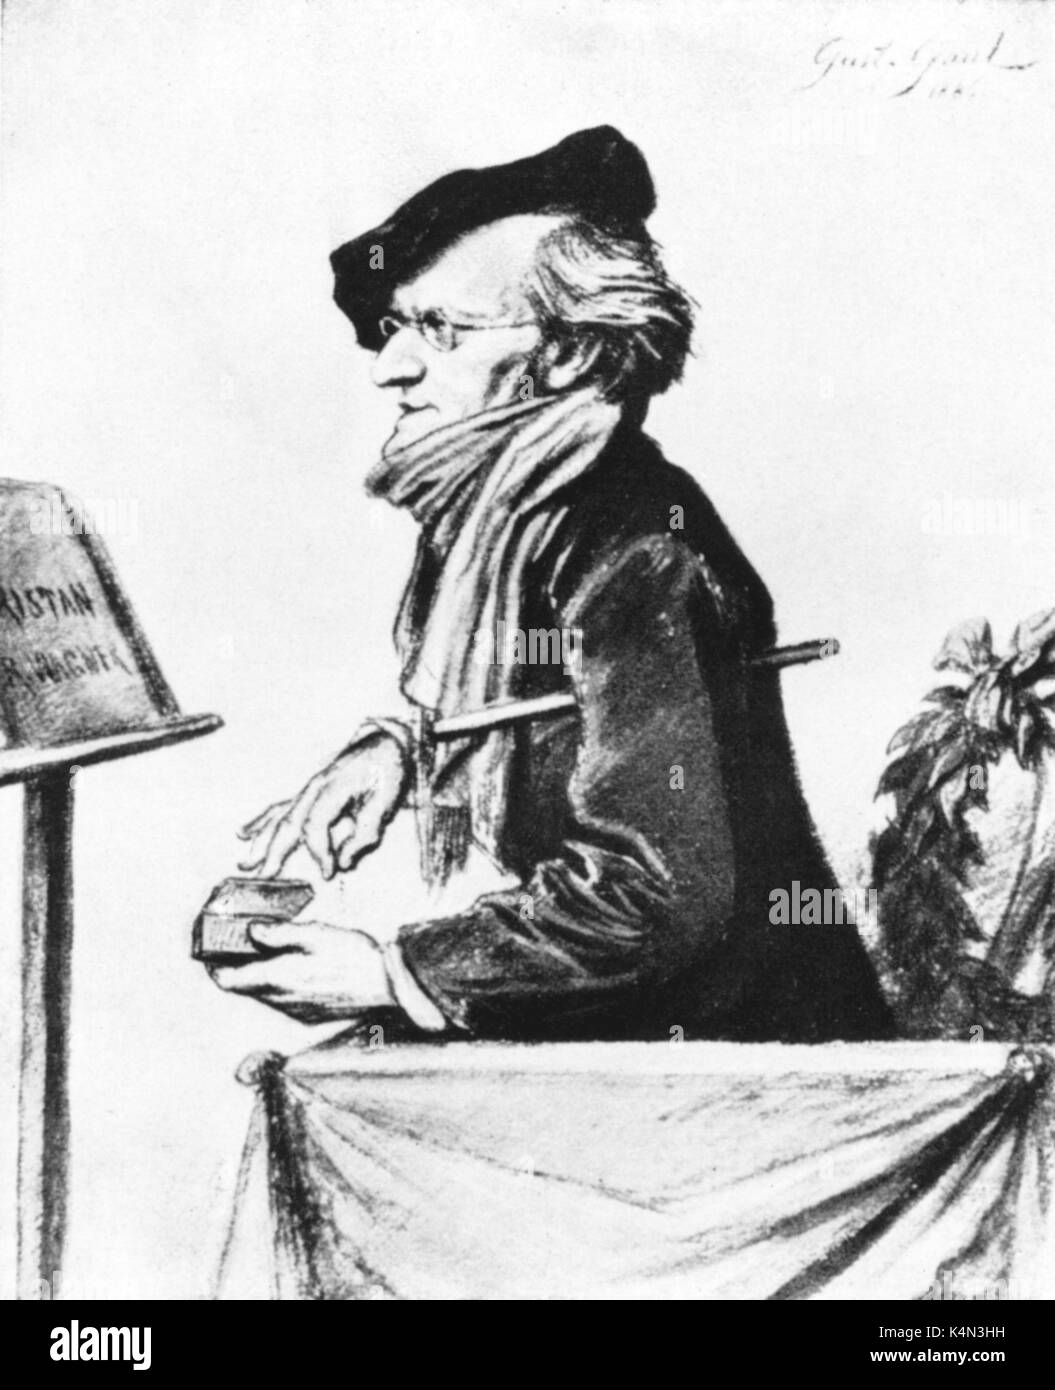 Richard Wagner ripassando "Tristano e Isotta", 1865 - caricatura di Gustav Gallia (1836 - 1888). Compositore tedesco & autore, 22 maggio 1813 - 13 febbraio 1883. Foto Stock